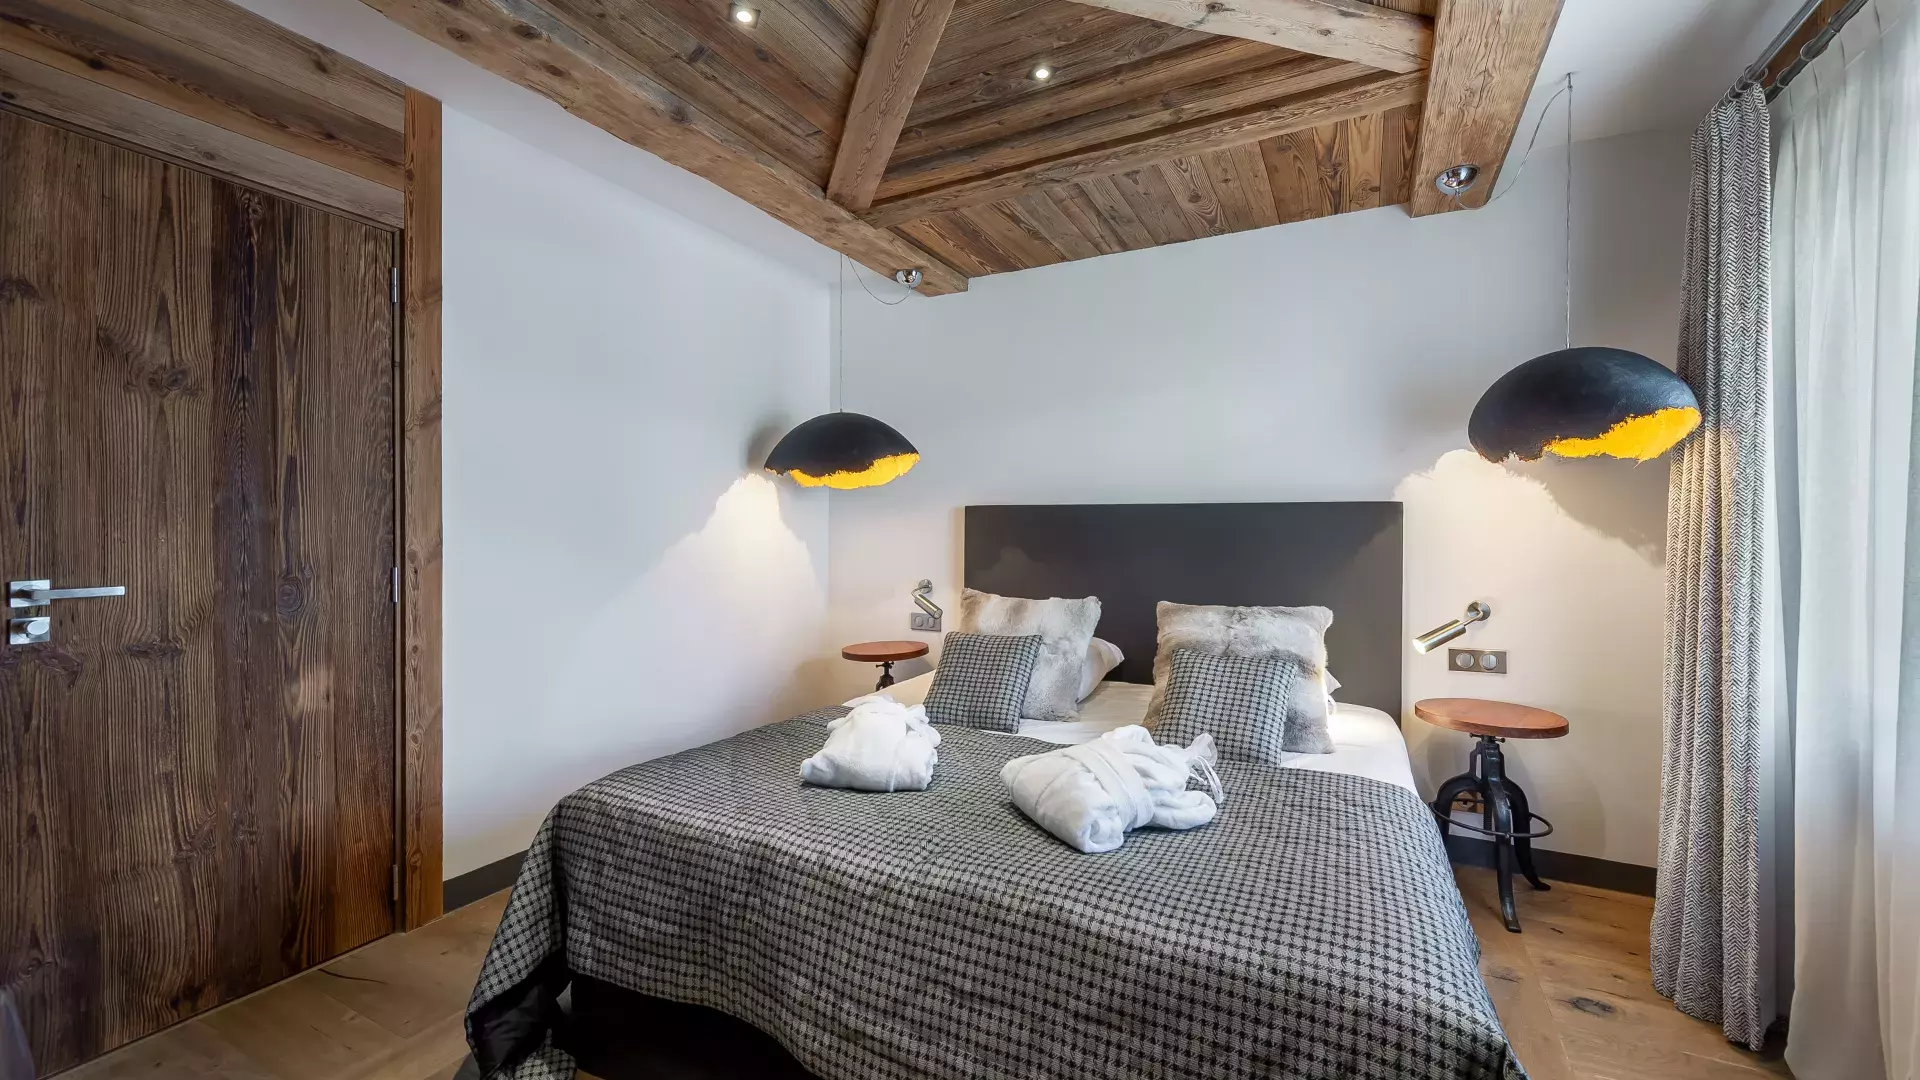 Appartement Penthouse Savoie 1 - Location chalets Covarel - Val d'Isère Alpes - France - Chambre 3